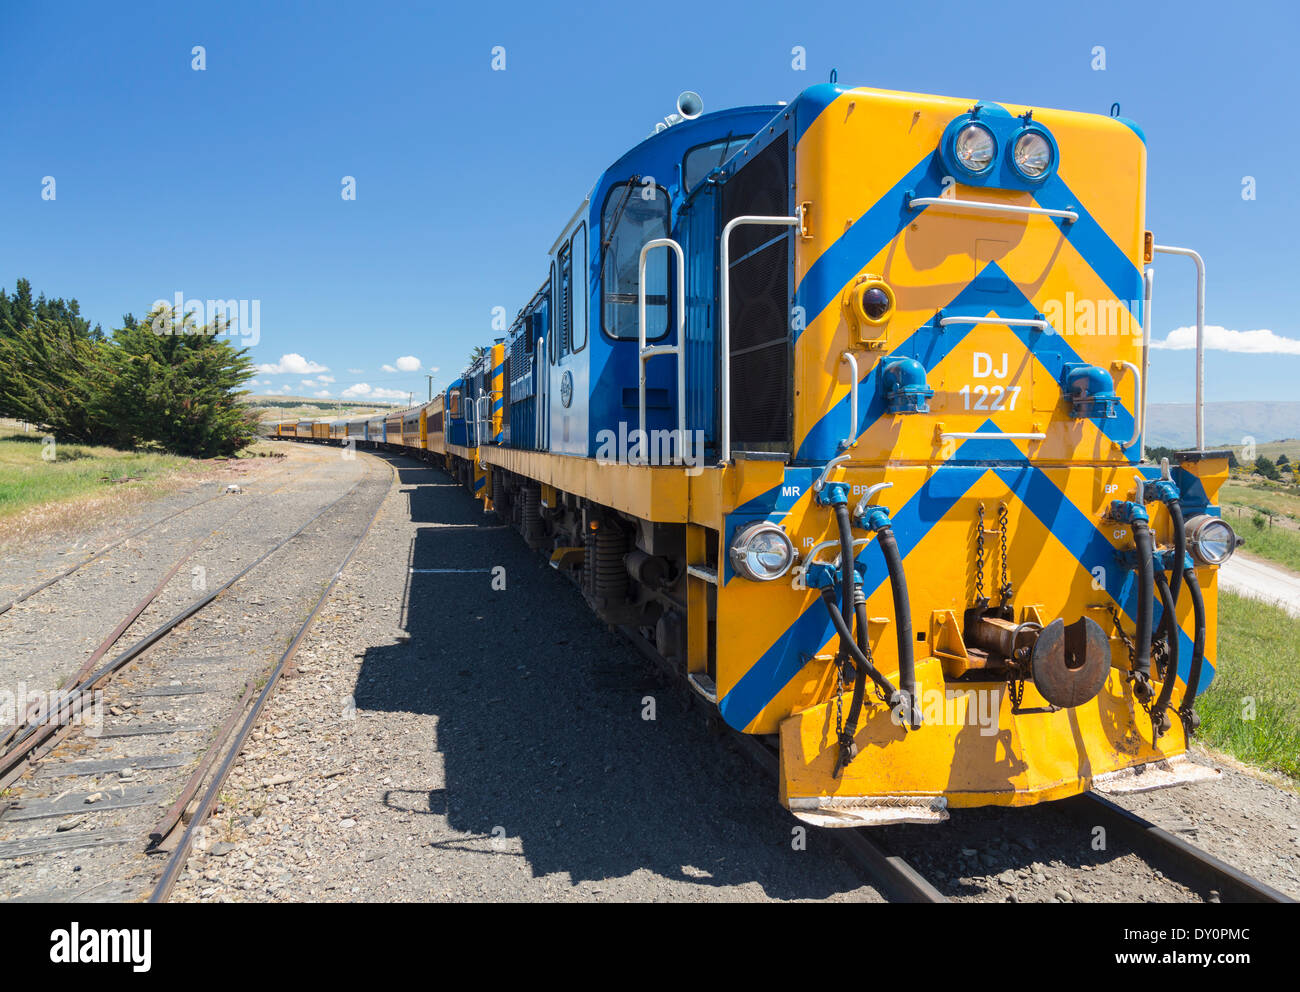 Fer Taieri Gorge train, Nouvelle-Zélande - un DJ locomotive diesel-électrique de classe Banque D'Images